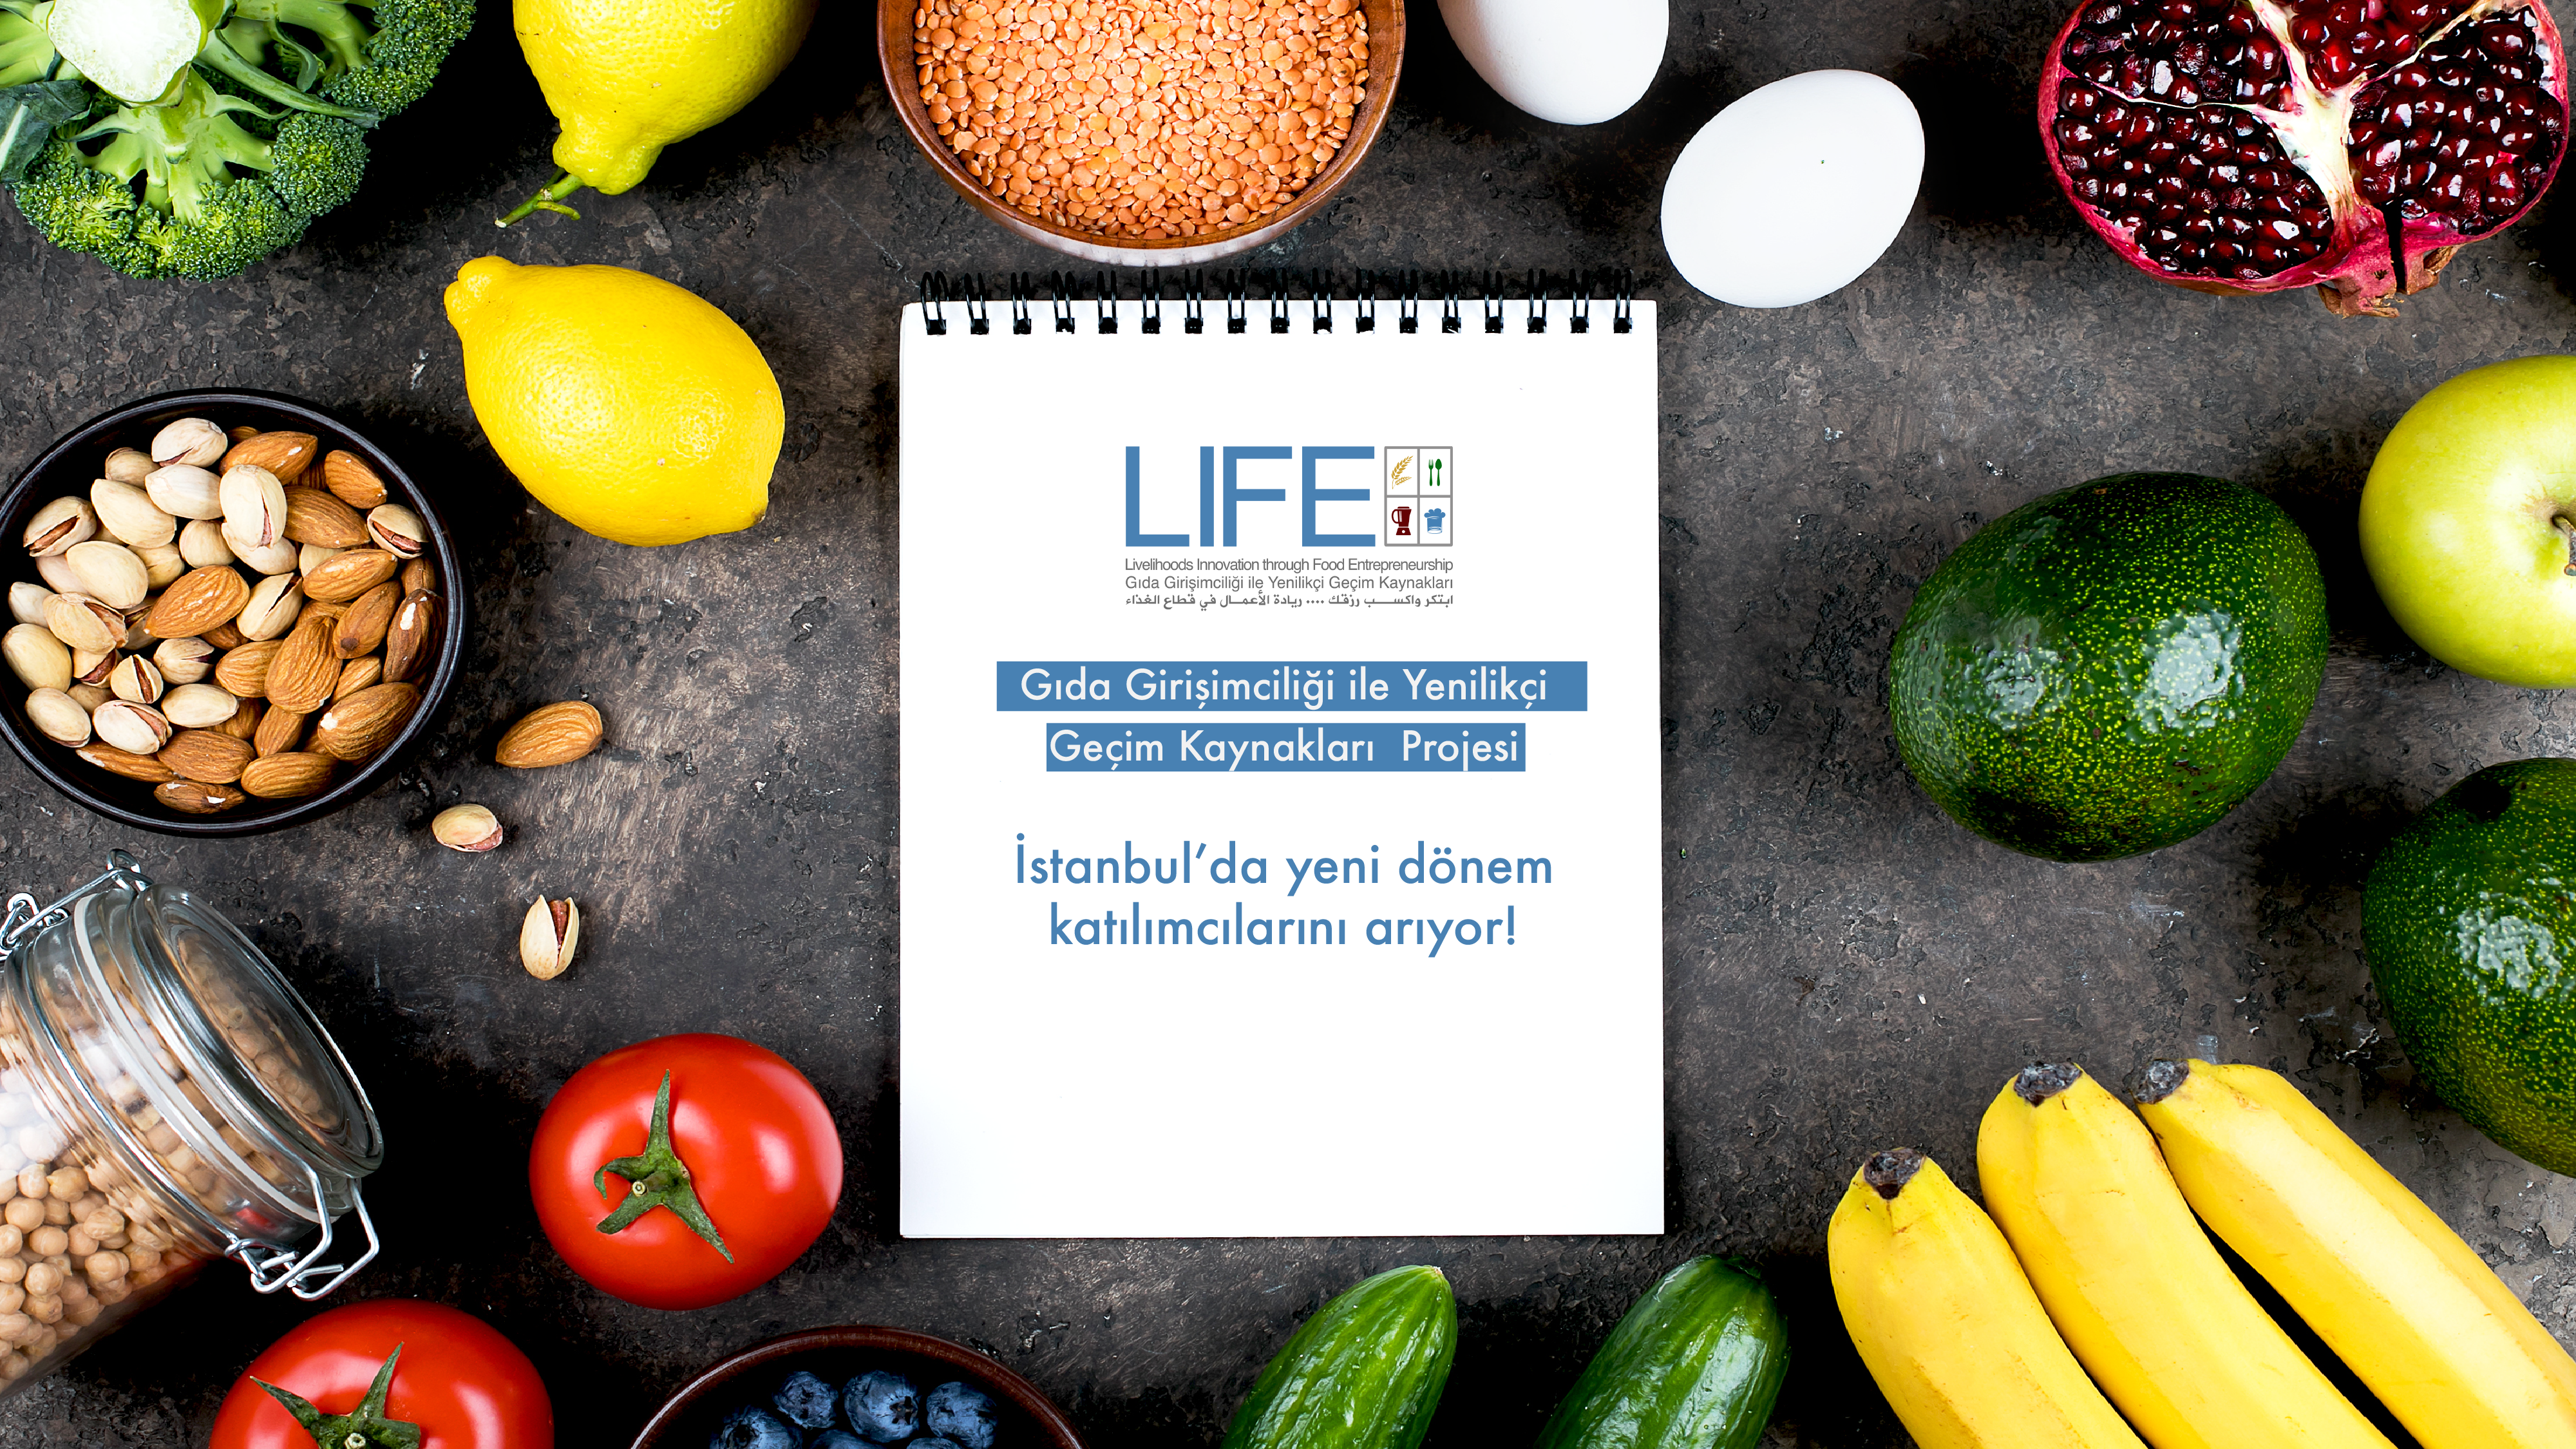 LIFE (Gıda Girişimciliği ile Yenilikçi Geçim Kaynakları) Projesi, İstanbul’da yeni dönem katılımcılarını arıyor!